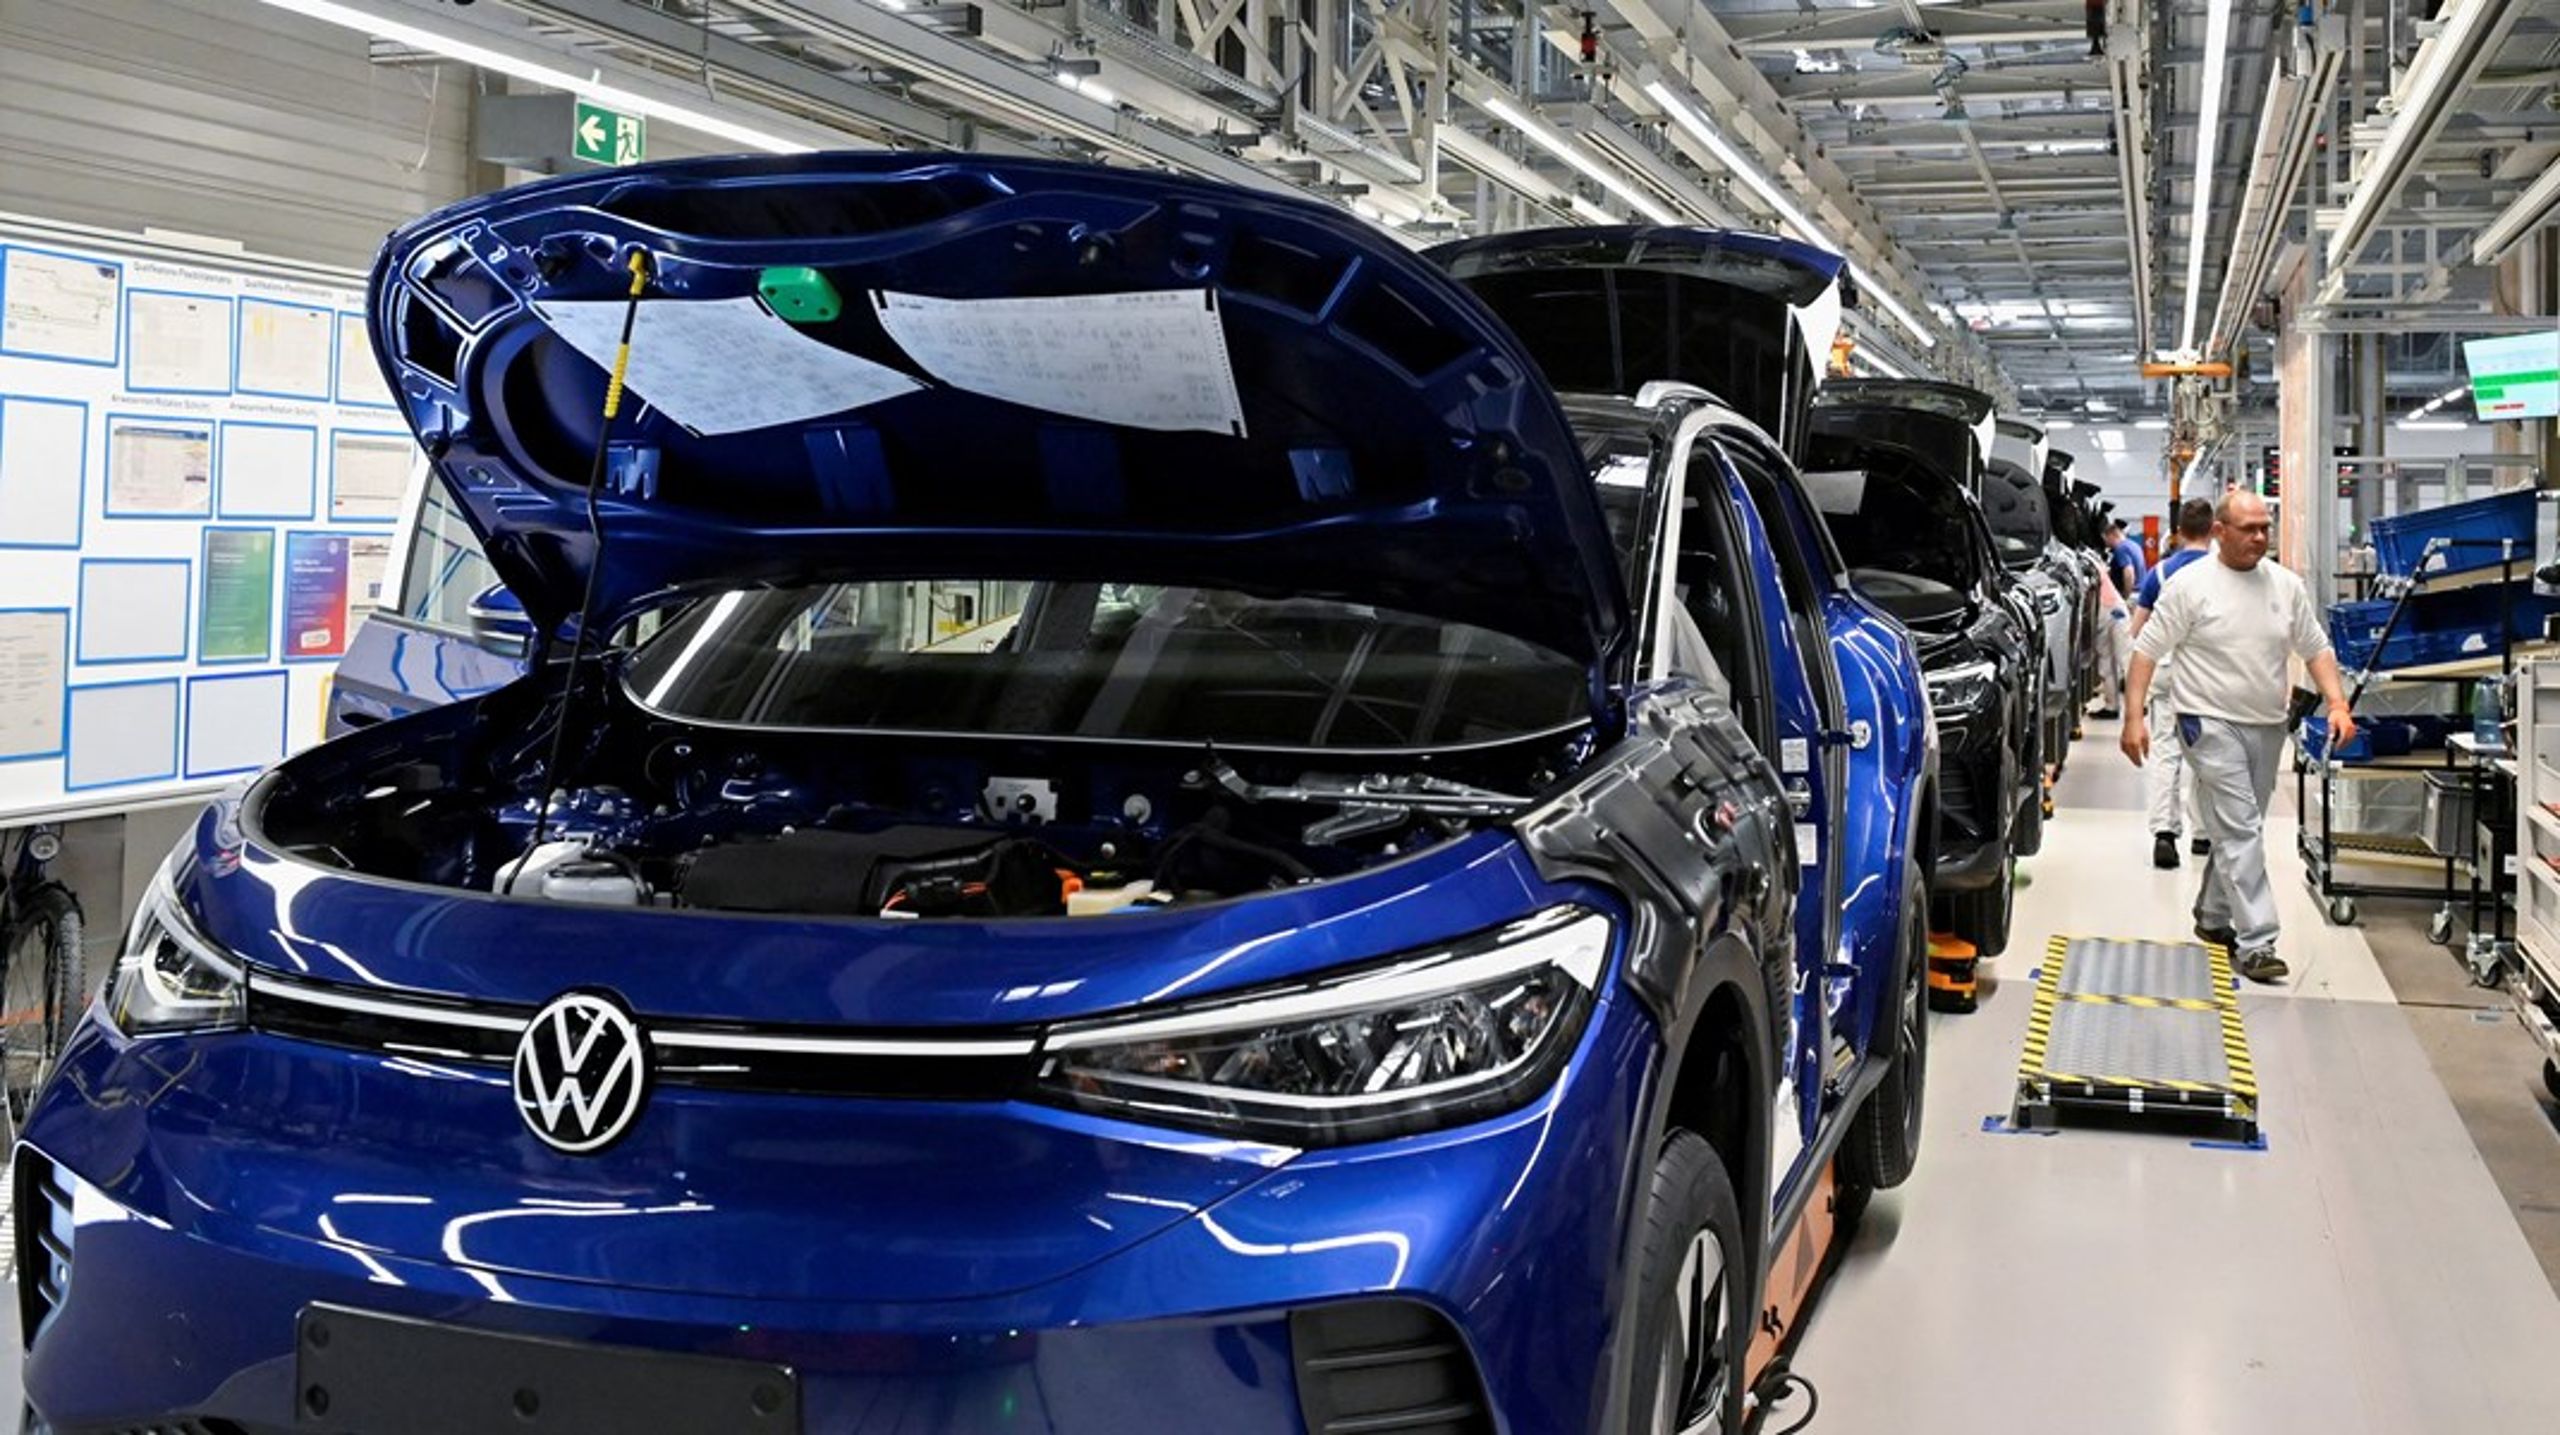 Tilbage i 2018 blev Volkswagen afsløret i at snyde med data om deres dieselbilers CO2-udledninger, så de ekstremt udledende motorer så helt grønne ud i tests.&nbsp;Det fik stor betydning for deres forretning, skriver Anna Ebbesen.